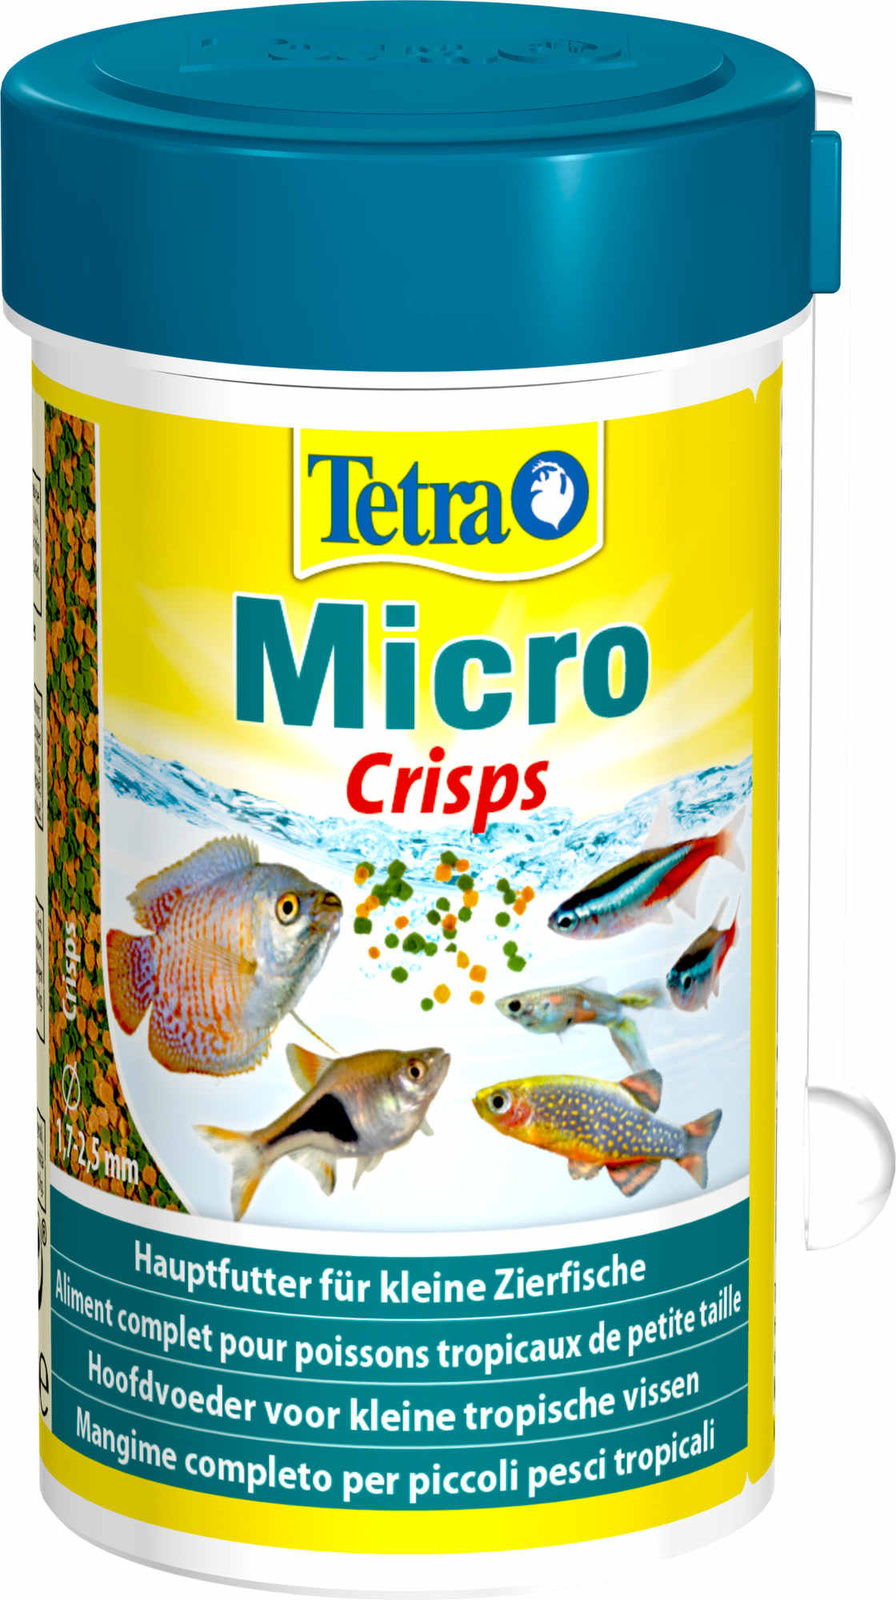 Tetra (корма) Tetra (корма) корм для для всех видов мелких рыб, микрочипсы (39 г) tetra корма tetra корма корм для бойцовых рыб и других видов лабиринтовых имитация мотыля 5 г